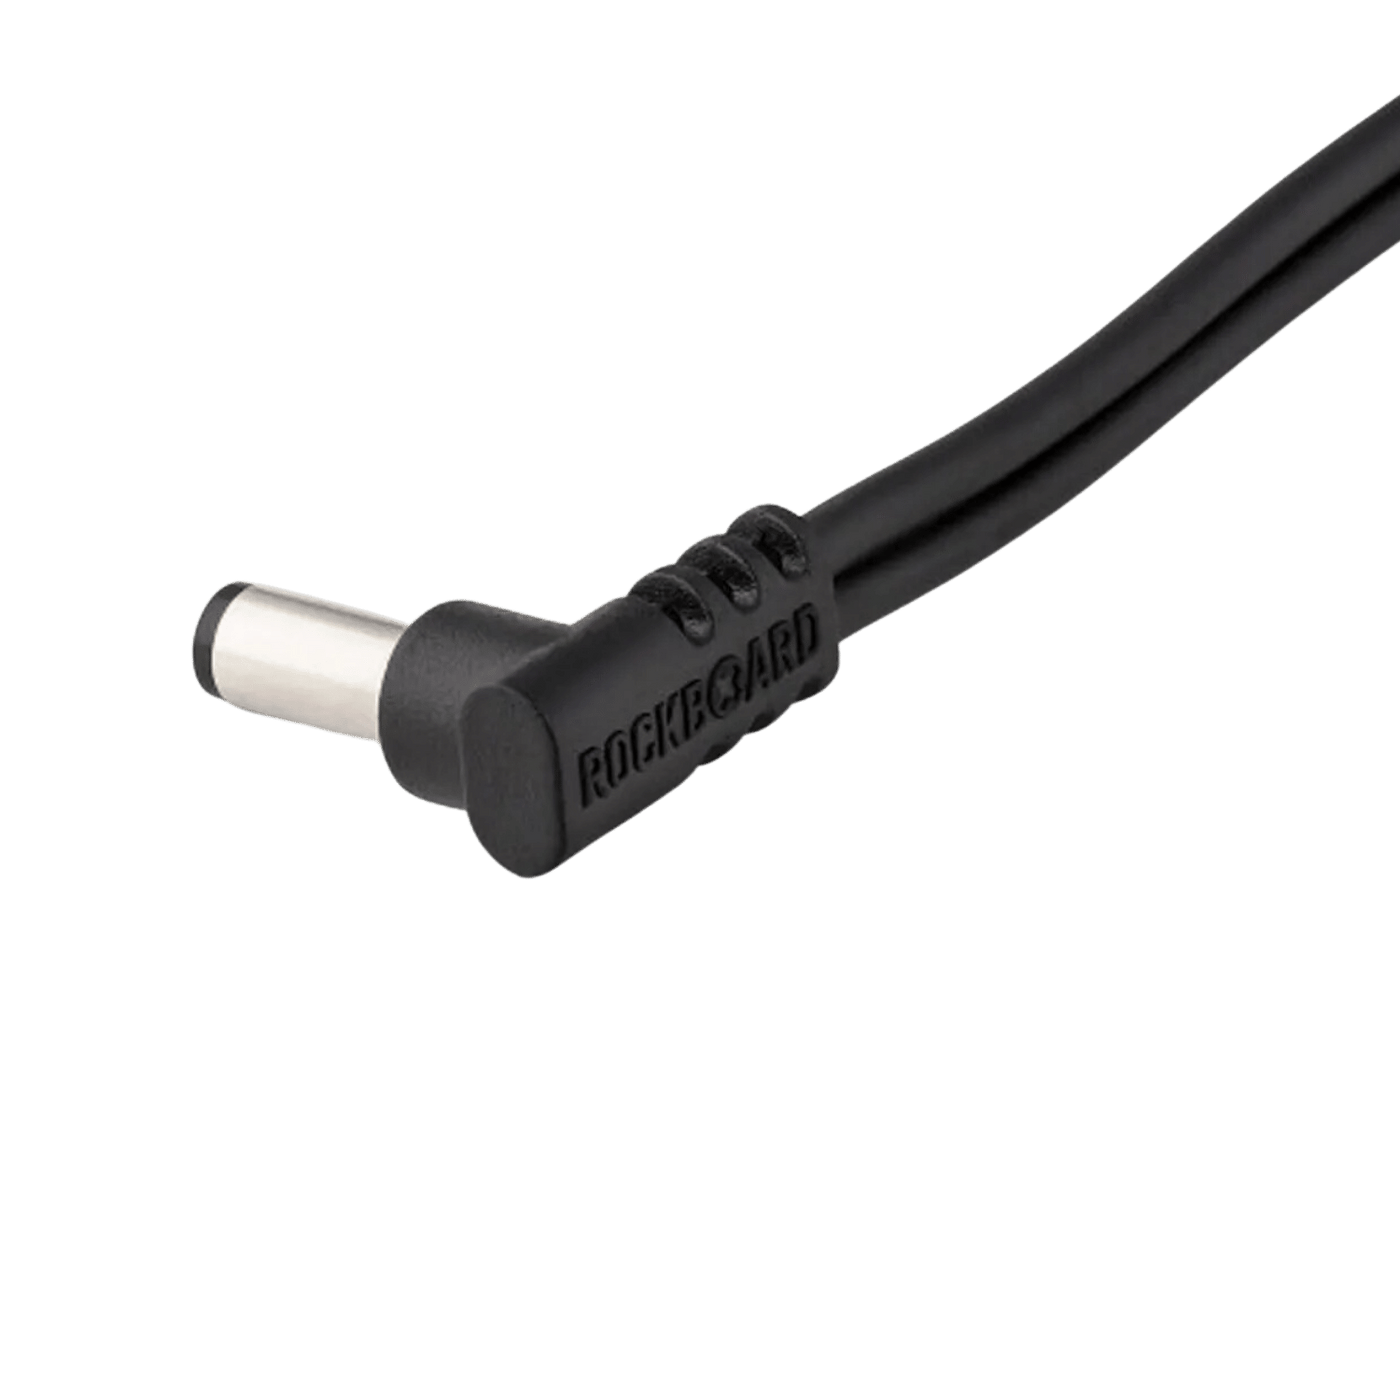 Cable de Energía Rockboard DC6 Angulado